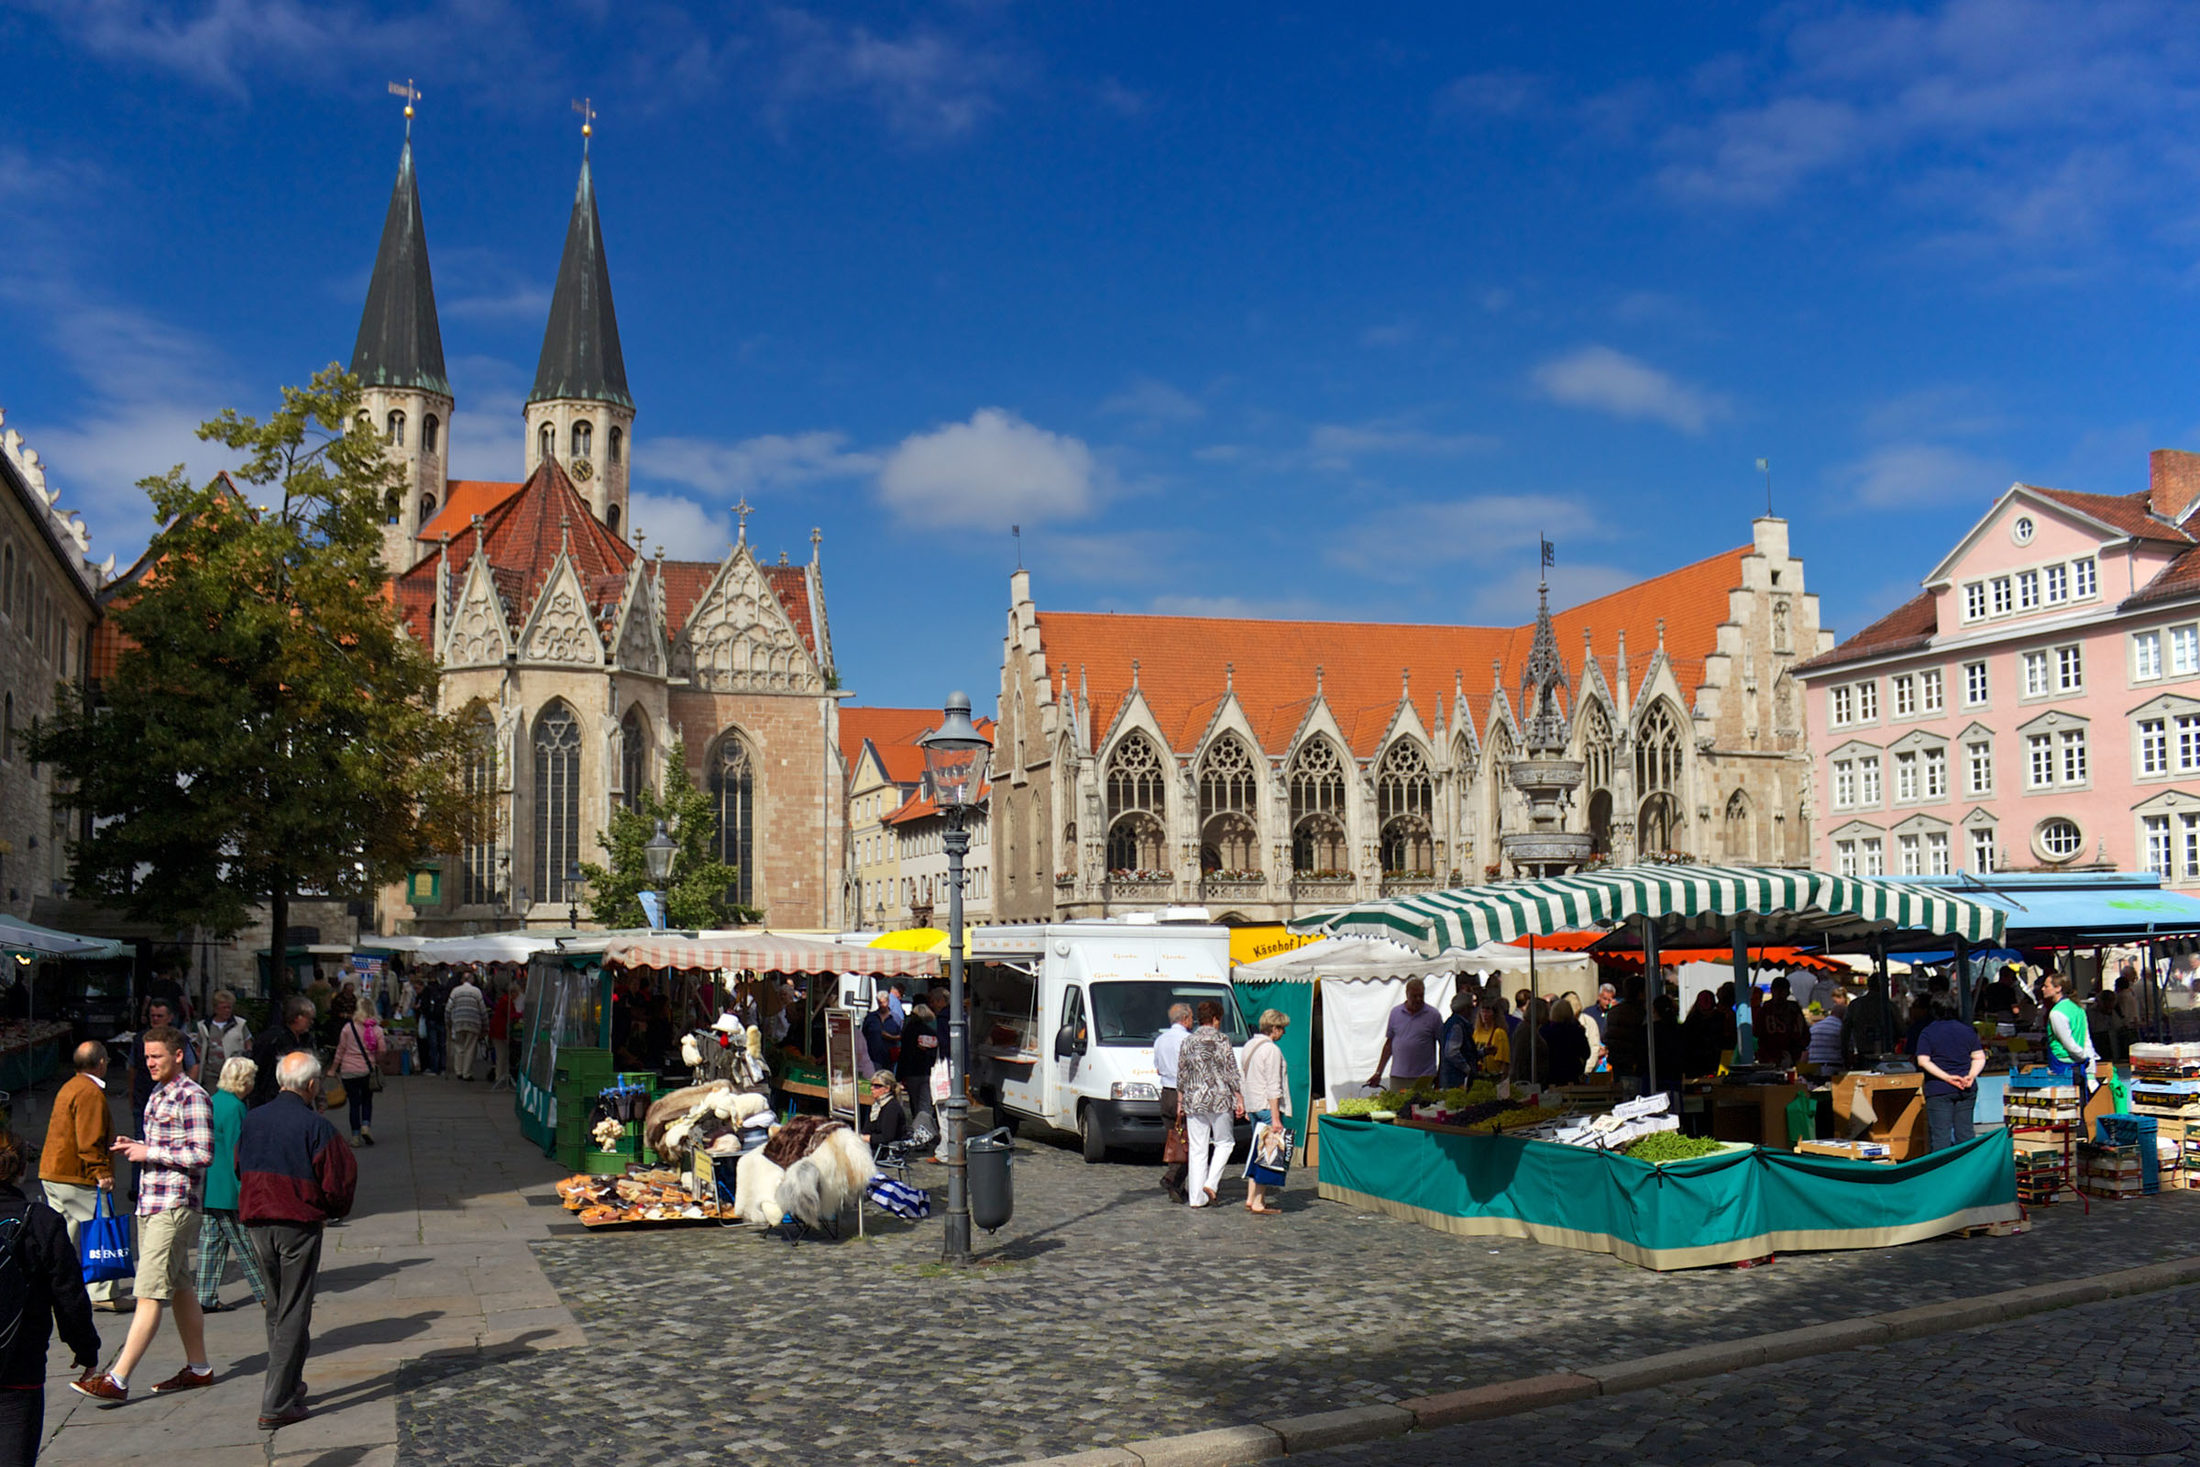 Wochenmarkt Altstadtmarkt